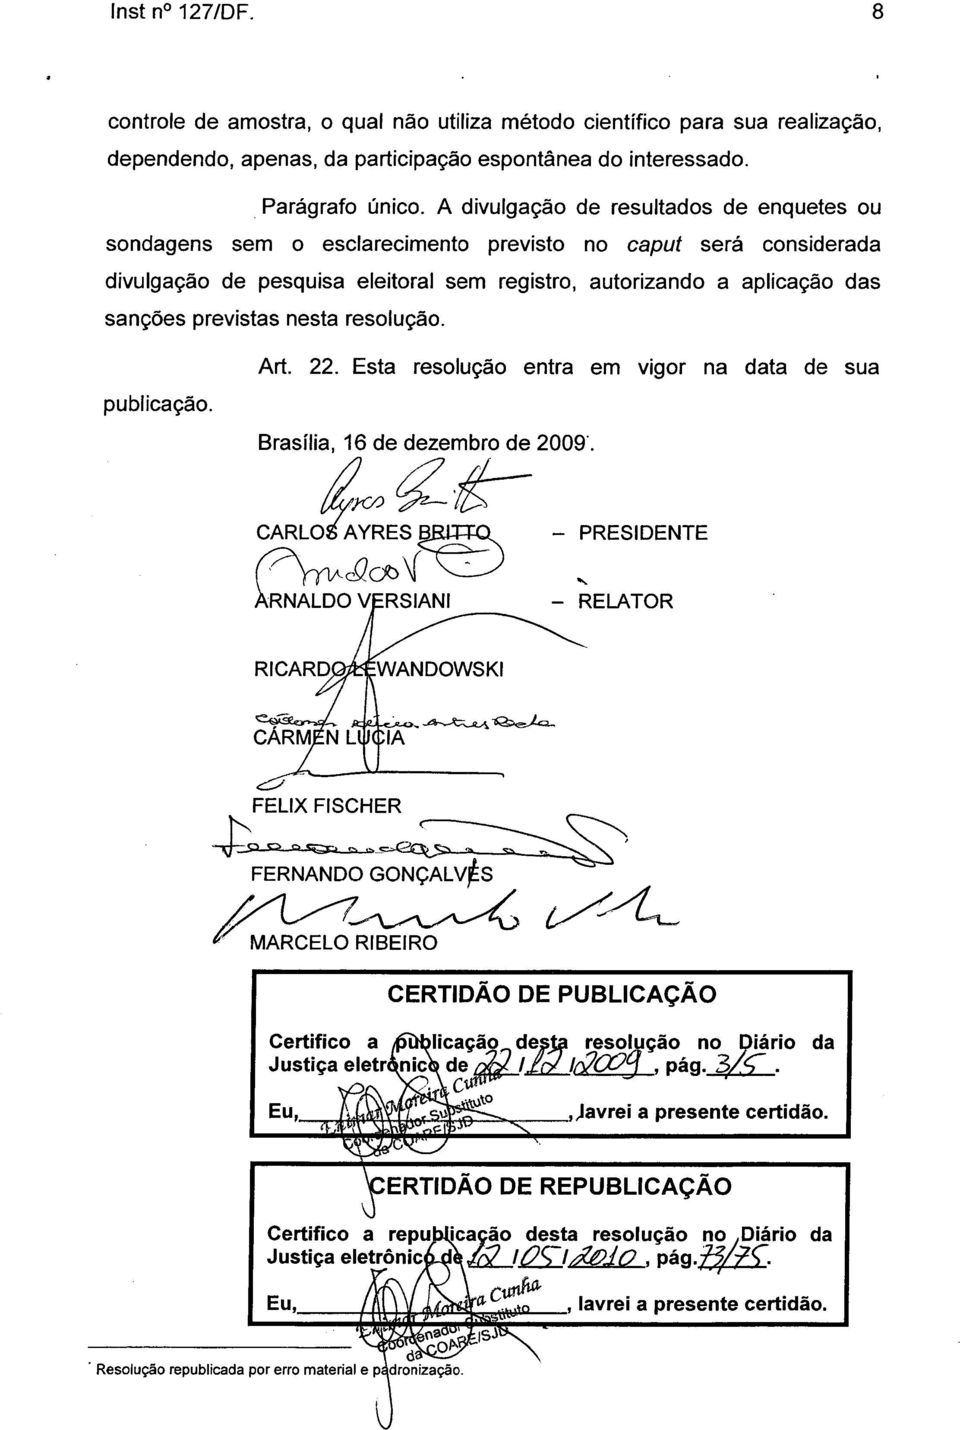 previstas nesta resolução. publicação. Art. 22. Esta resolução entra em vigor na data de sua Brasília, 16 de dezembro de 2009'. CARLO AYRESB - PRESIDENTE ÀRNALDO VERSIANI - RELATOR L 44 --.